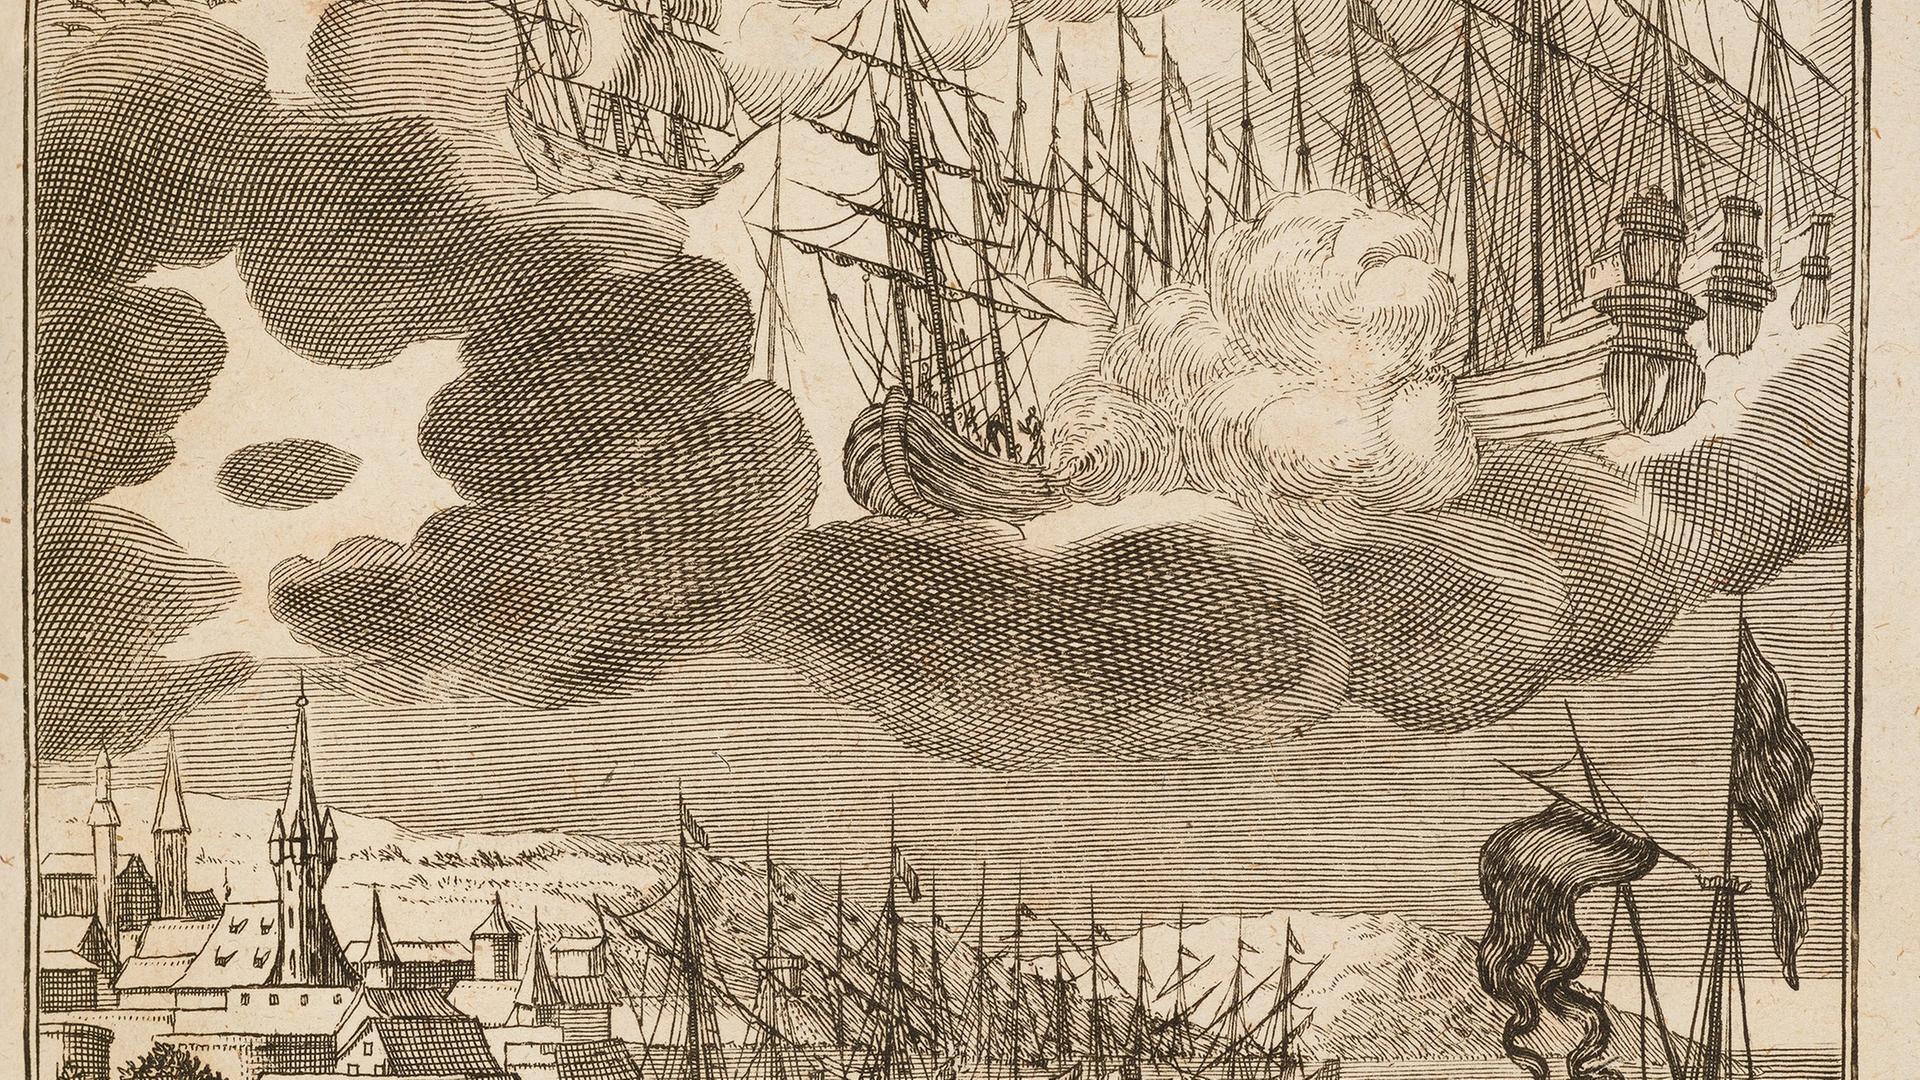 Ein Kupferstich auf dem Schiffe im Himmel und ein rundes Flugobjekt in den Wolken zu sehen sind. Im unteren Teil des Bildes stehen Menschen und gucken in den Himmel.